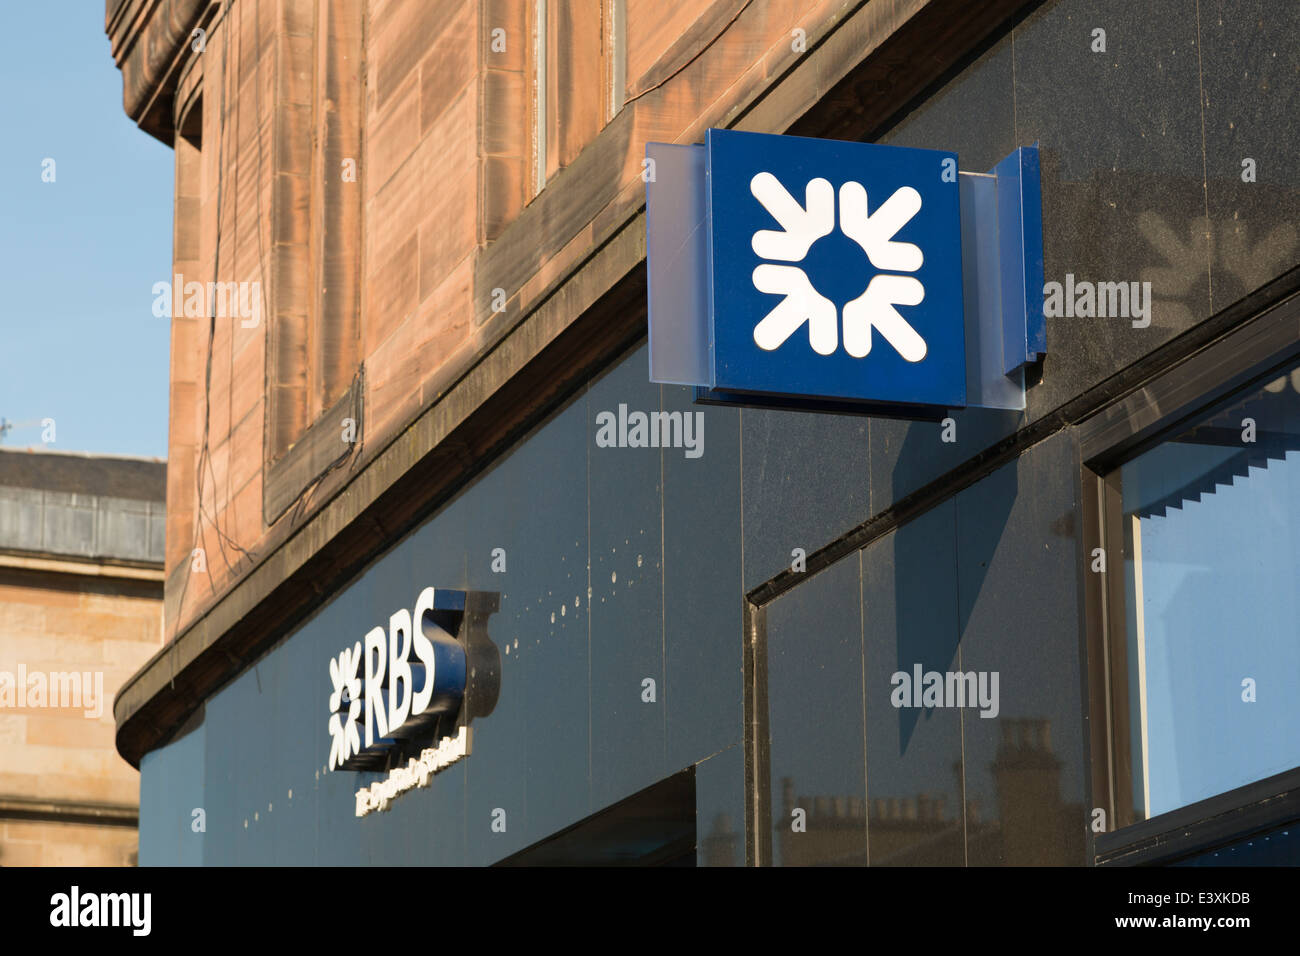 La signalisation pour Royal Bank of Scotland bank dans Byres Road, Glasgow, Scotland UK Banque D'Images